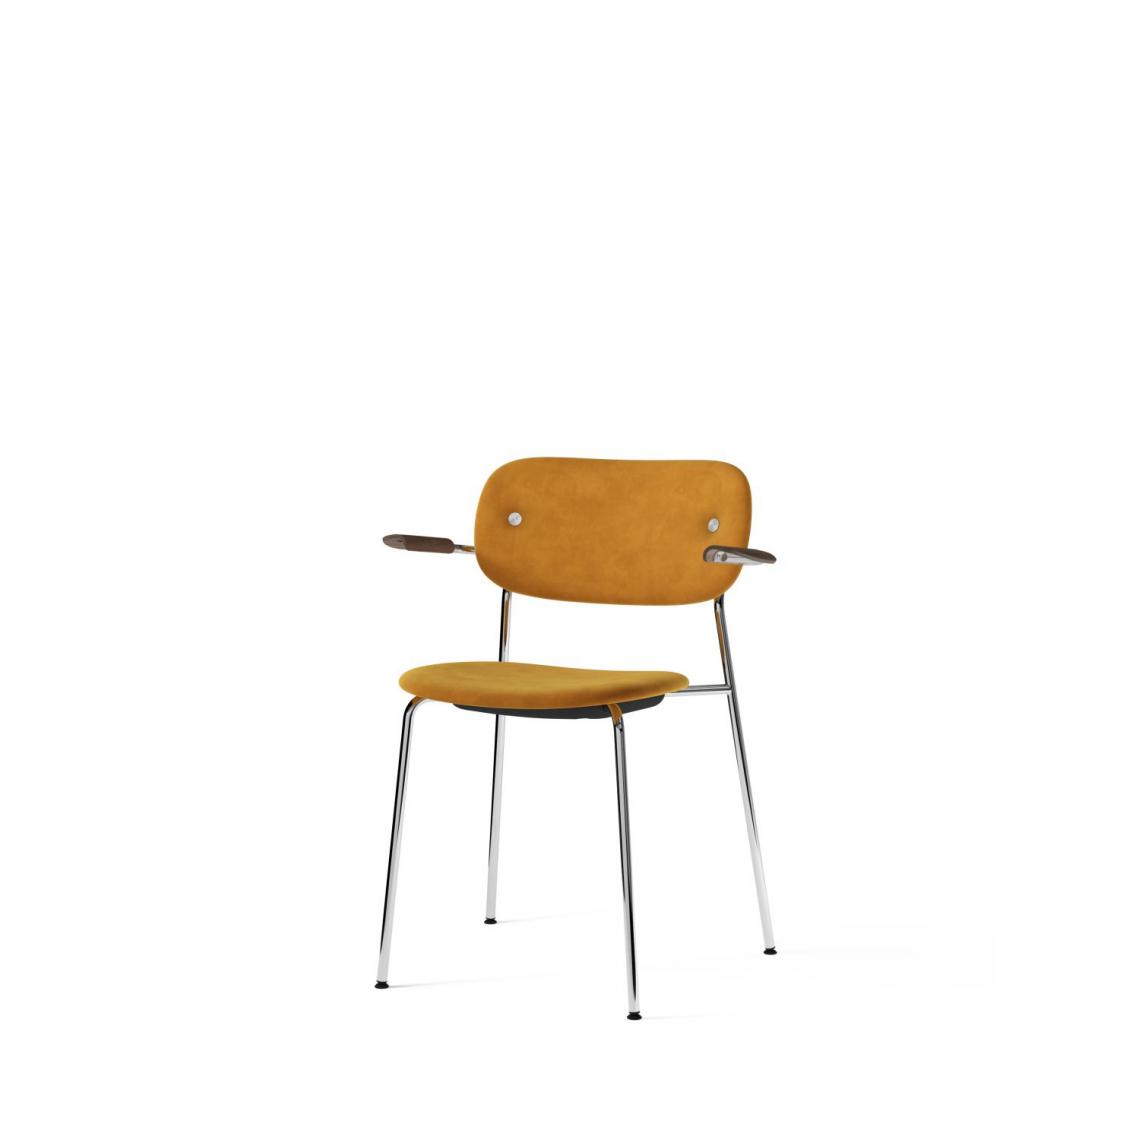 Menu - Co Dining Chair avec accoudoir - chrome - MenuCoChairRitz1644 - chêne, teinté foncé - Chaises